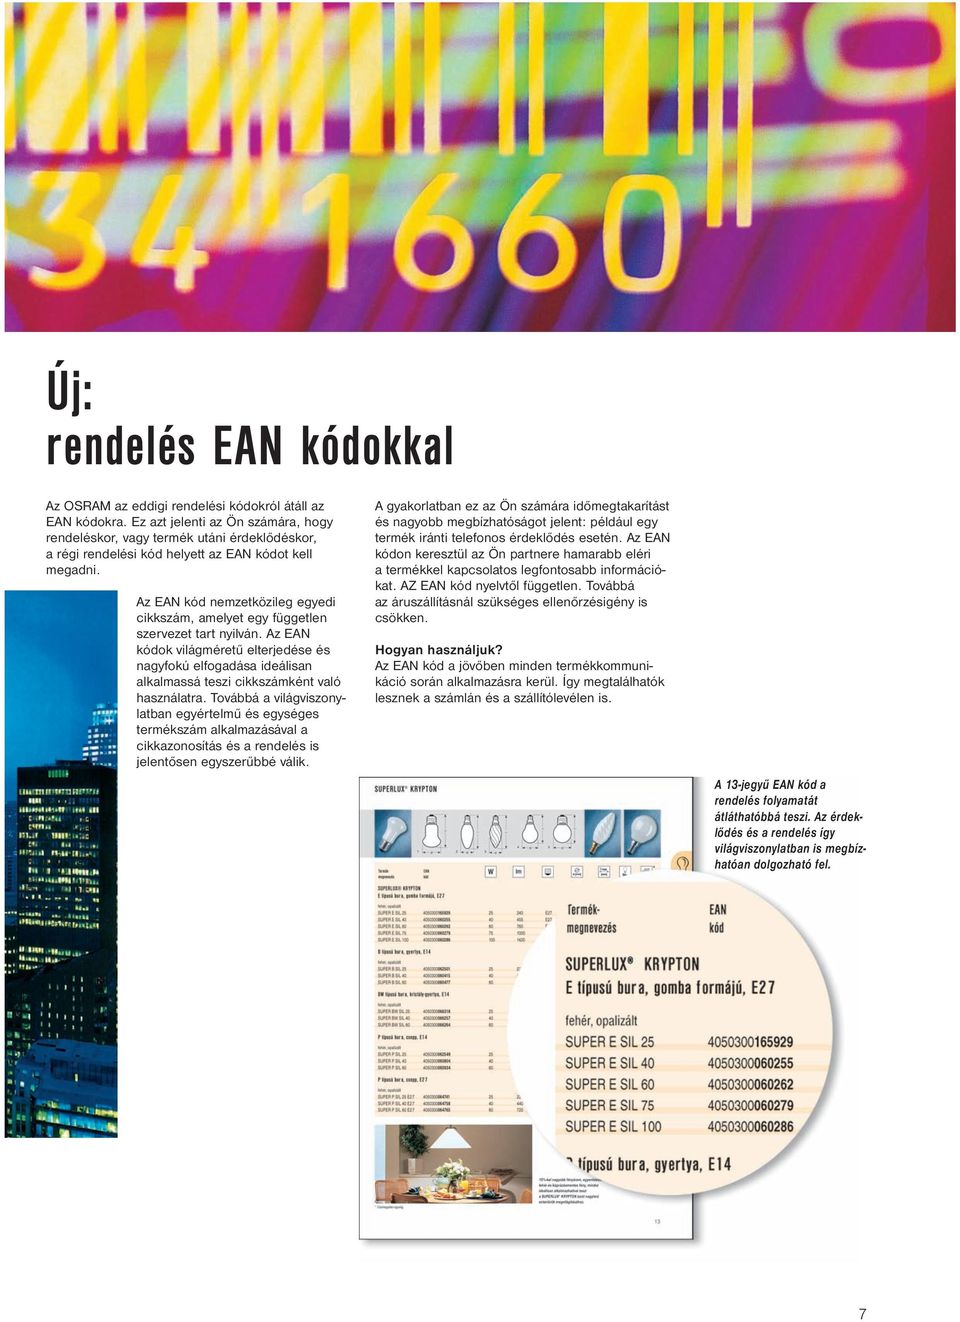 Az EAN kód nemzetközileg egyedi cikkszám, amelyet egy független szervezet tart nyilván.